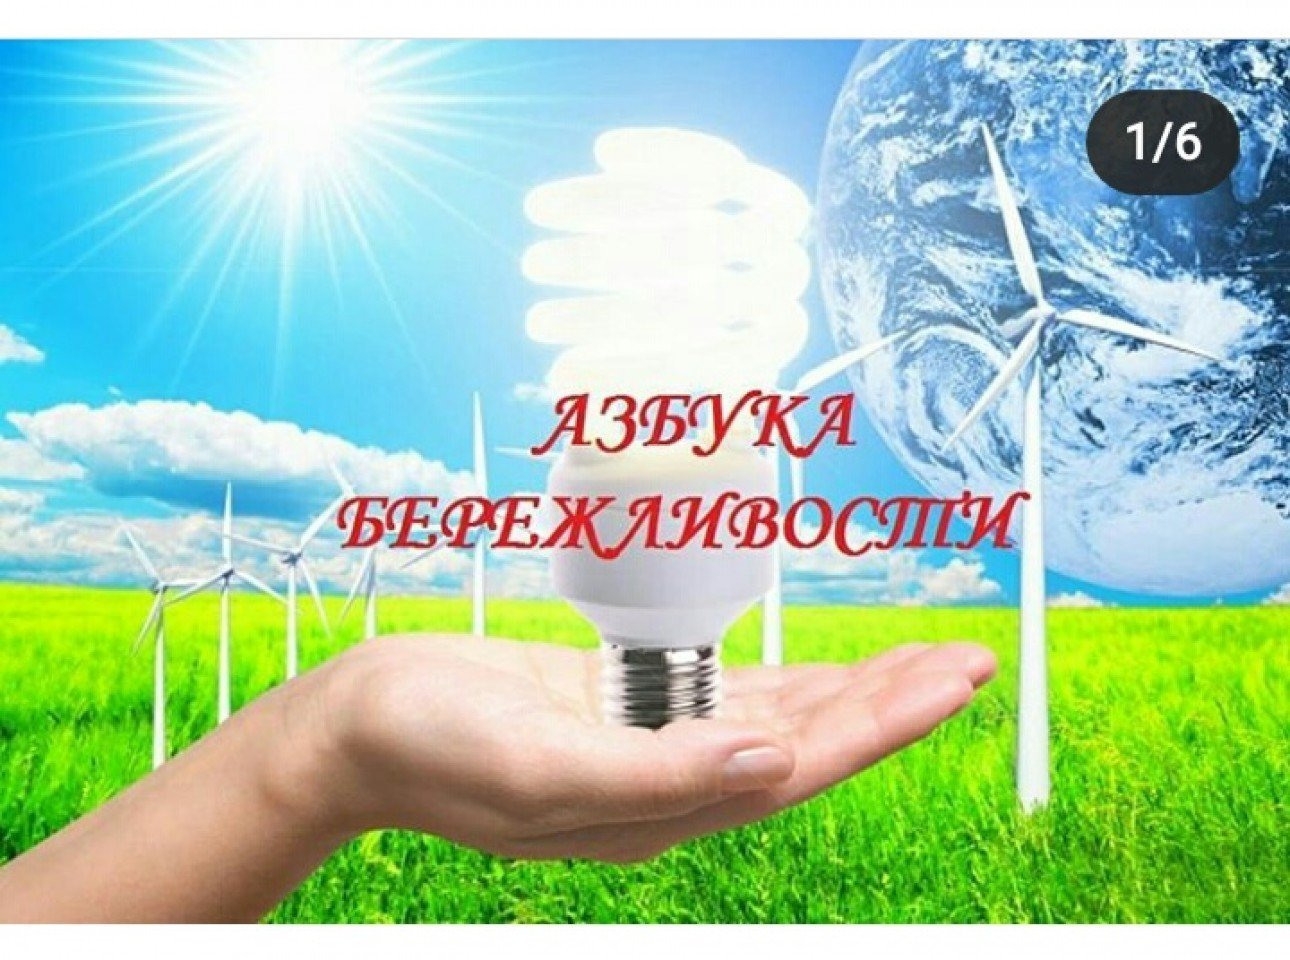 Рациональное использование топлива. Энергосбережение. Энергосбережение электроэнергии. Экономия энергии. Энергосбережение и энергоэффективность.